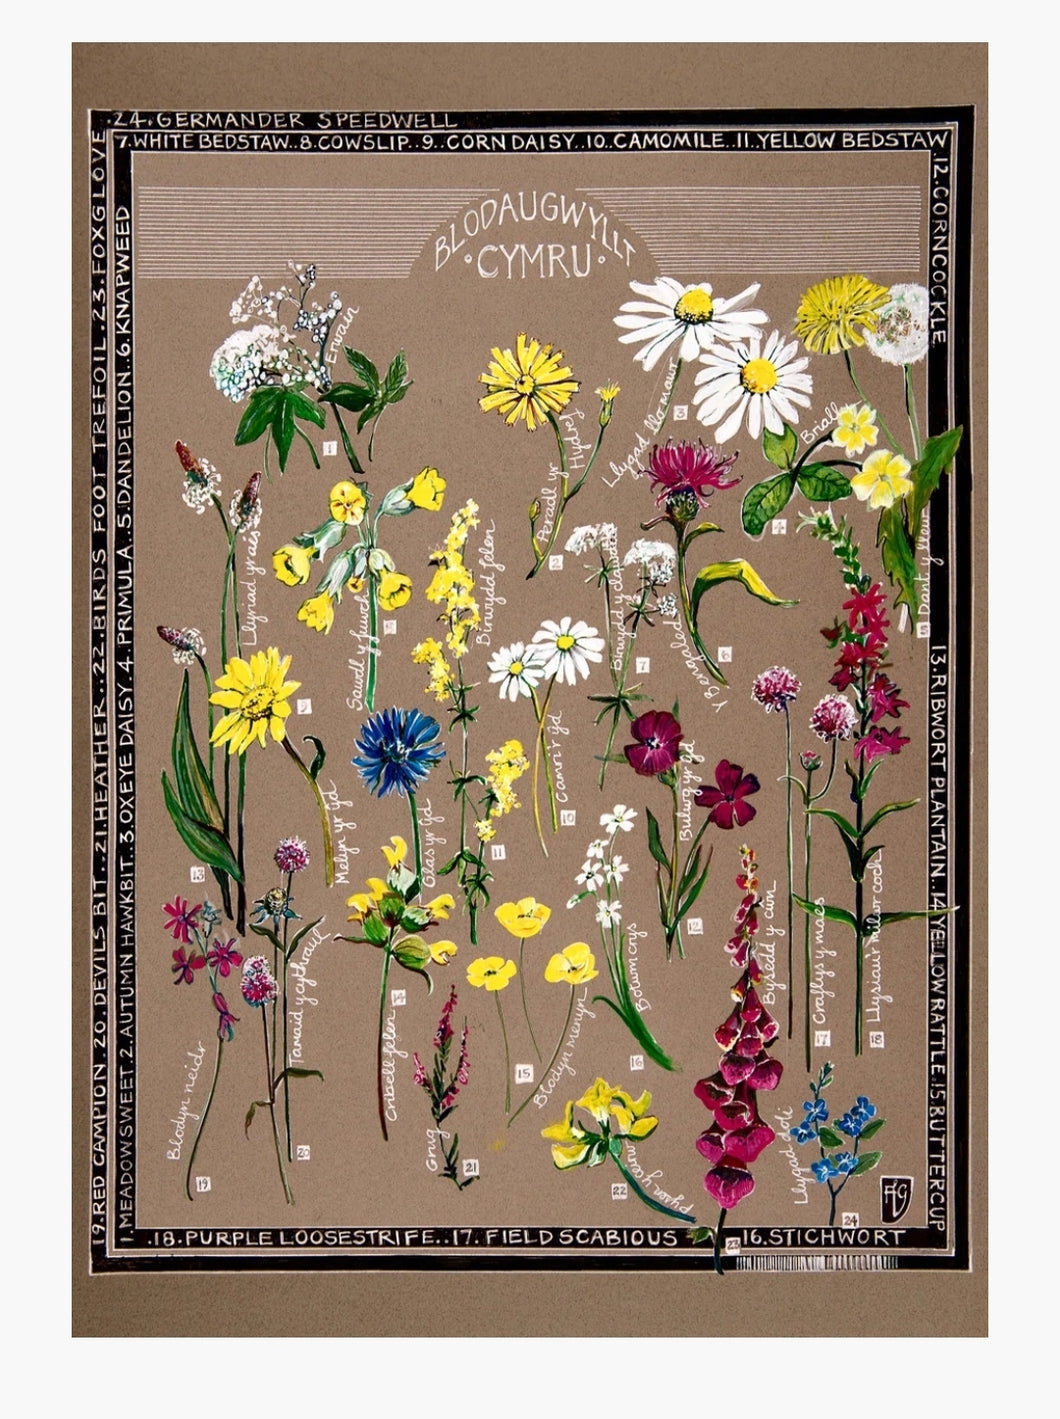 Blodau gwyllt / Wild flowers A3 print by Ffion Gwyn